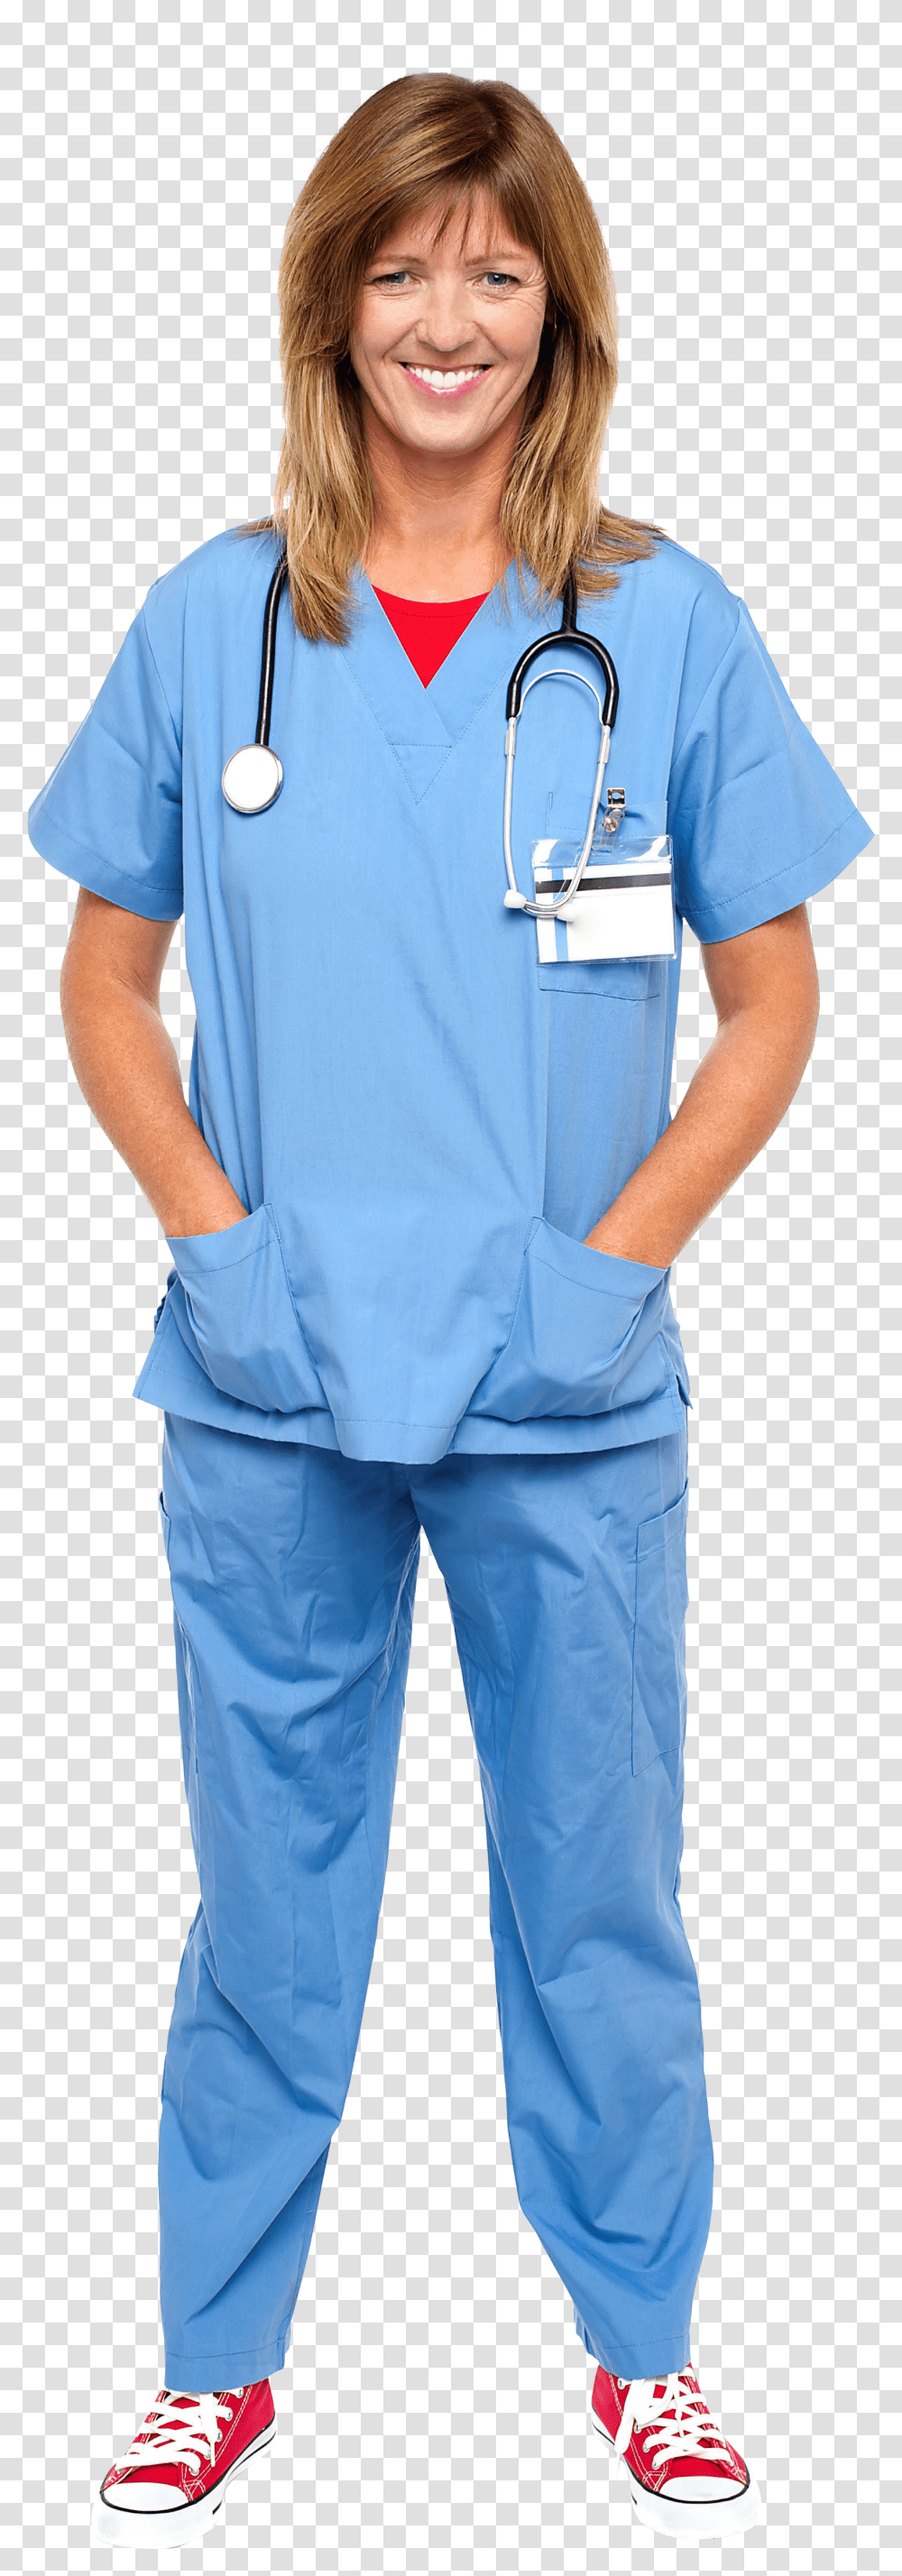 Female Doctor Image Nurse Transparent Png